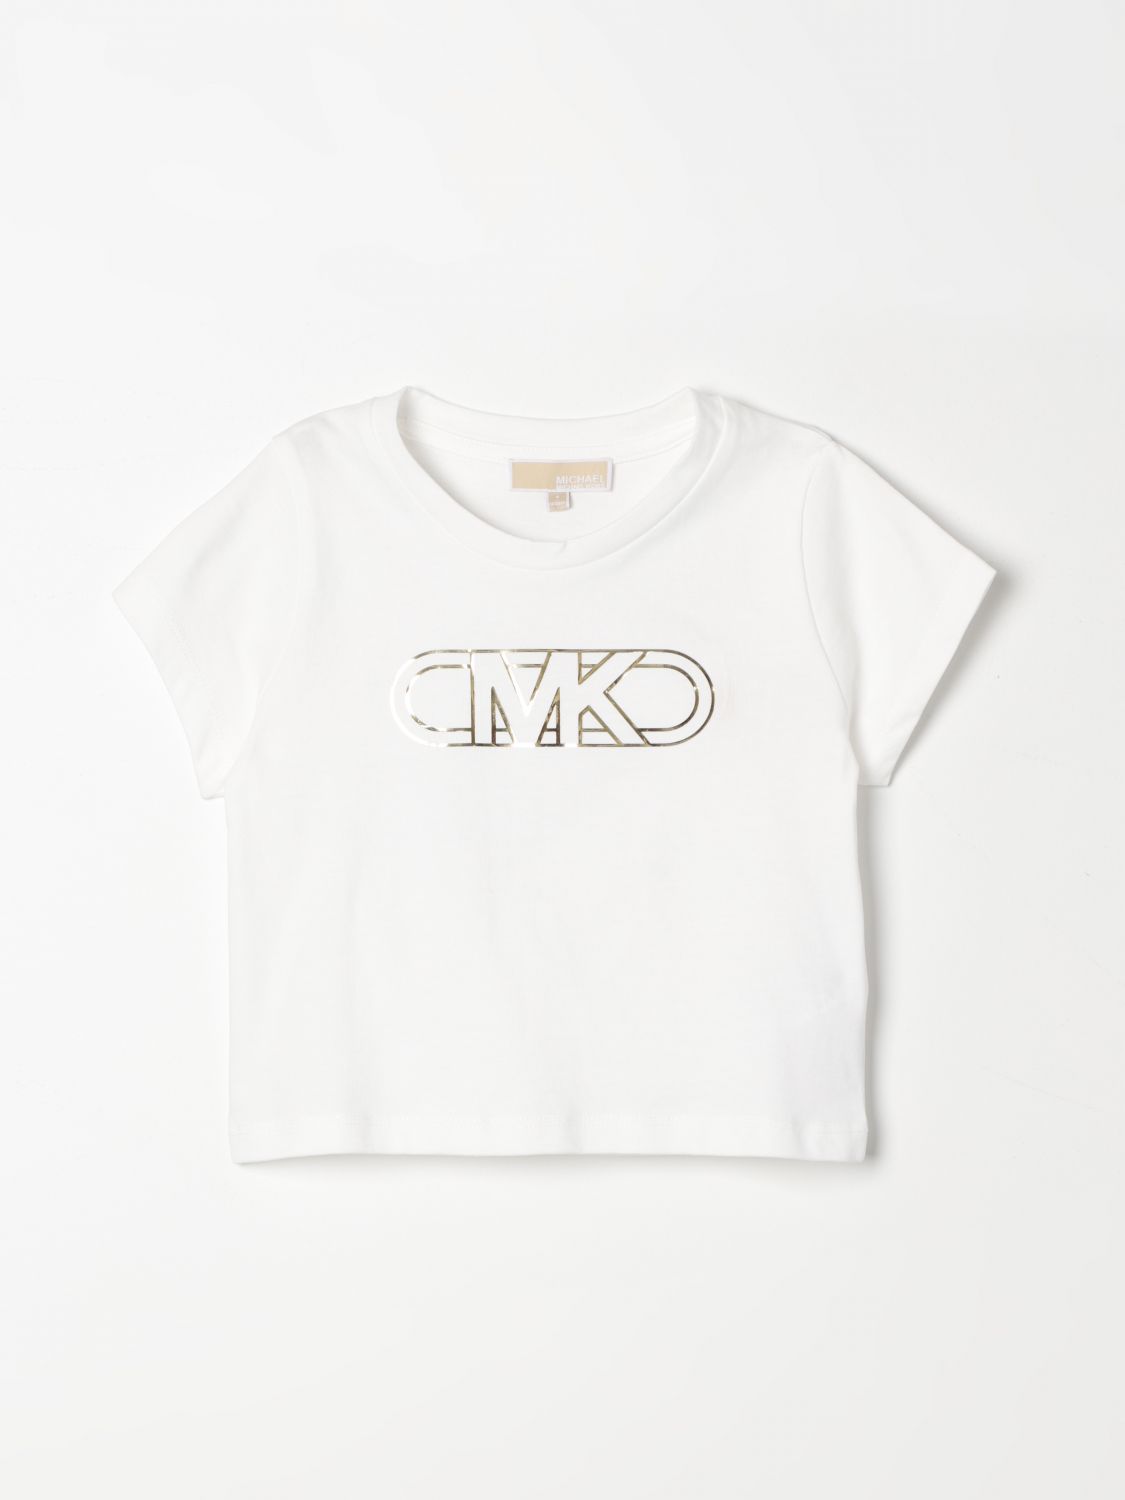 Michael Kors T-shirt  Kids Colour White